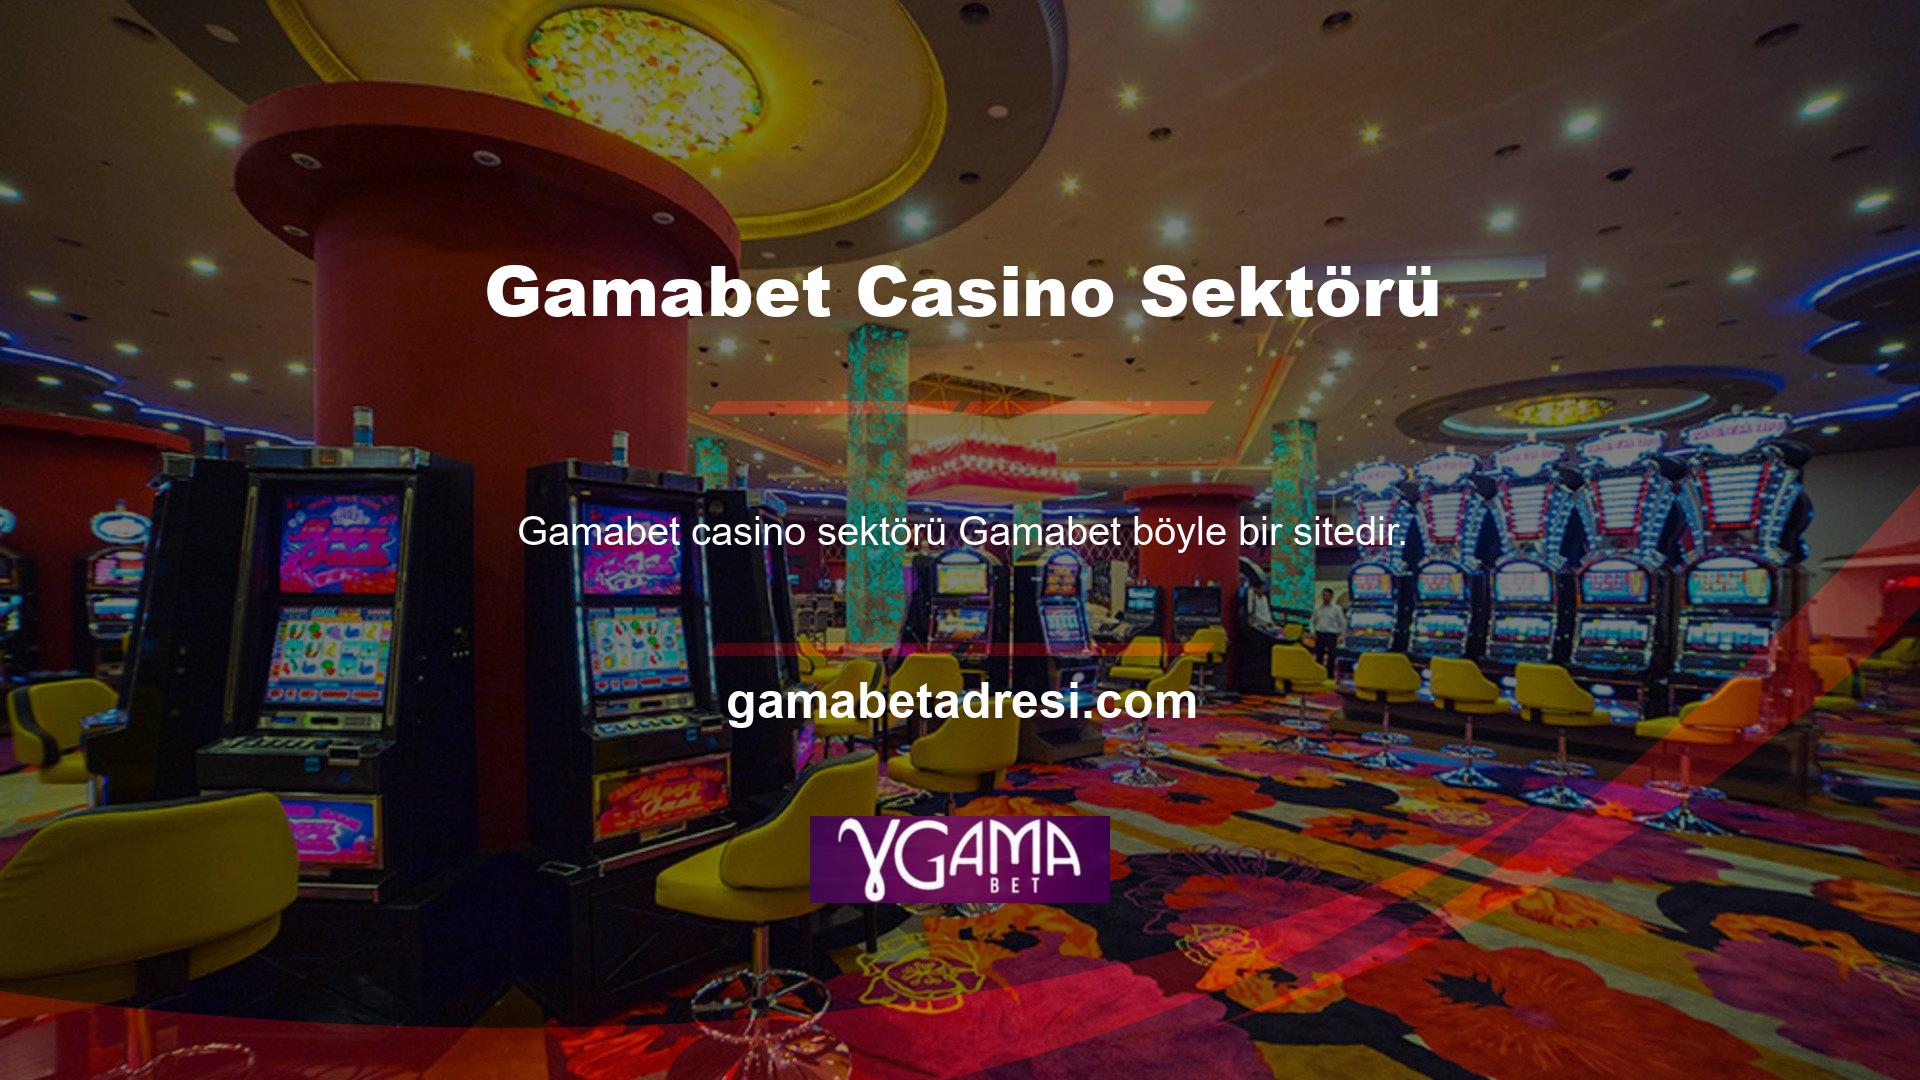 Türkiye'deki yasal casino sektörünün tek bir kurum tarafından yönetilmesi, yasal sitelerin düşük oranlı ve sınırlı bahis seçenekleriyle yasal sitelere hizmet vermesi sonucunu doğurmuştur